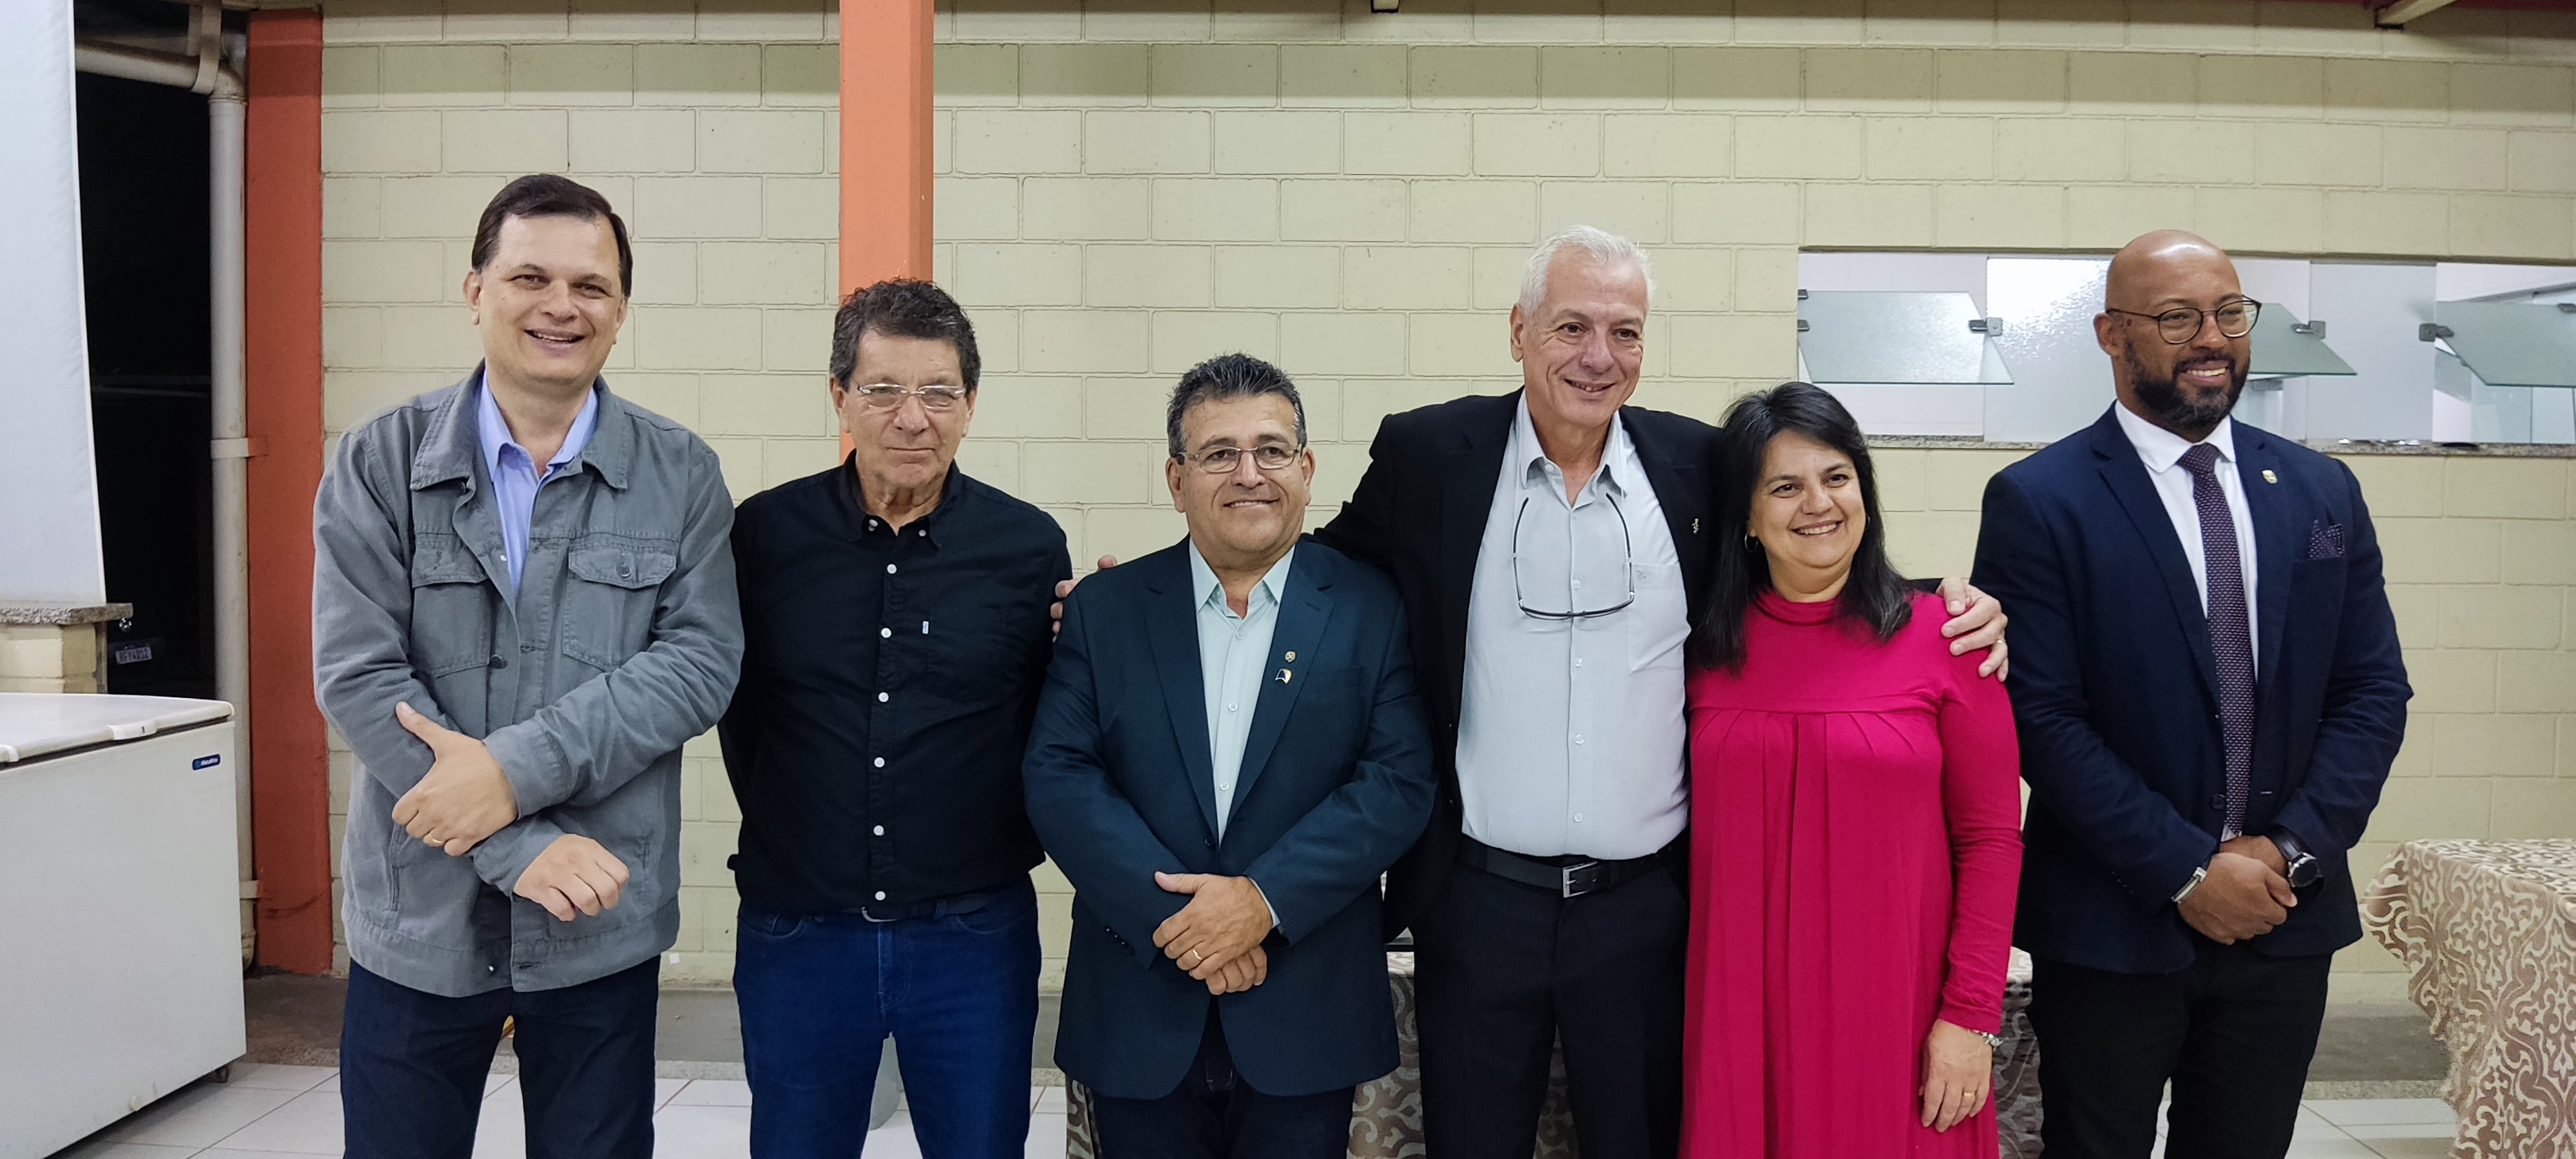 O Dr. César Roberto Schmidt ex-presidente da APCD-Regional Piracicaba recebeu voto de congratulações da Câmara de Vereadores